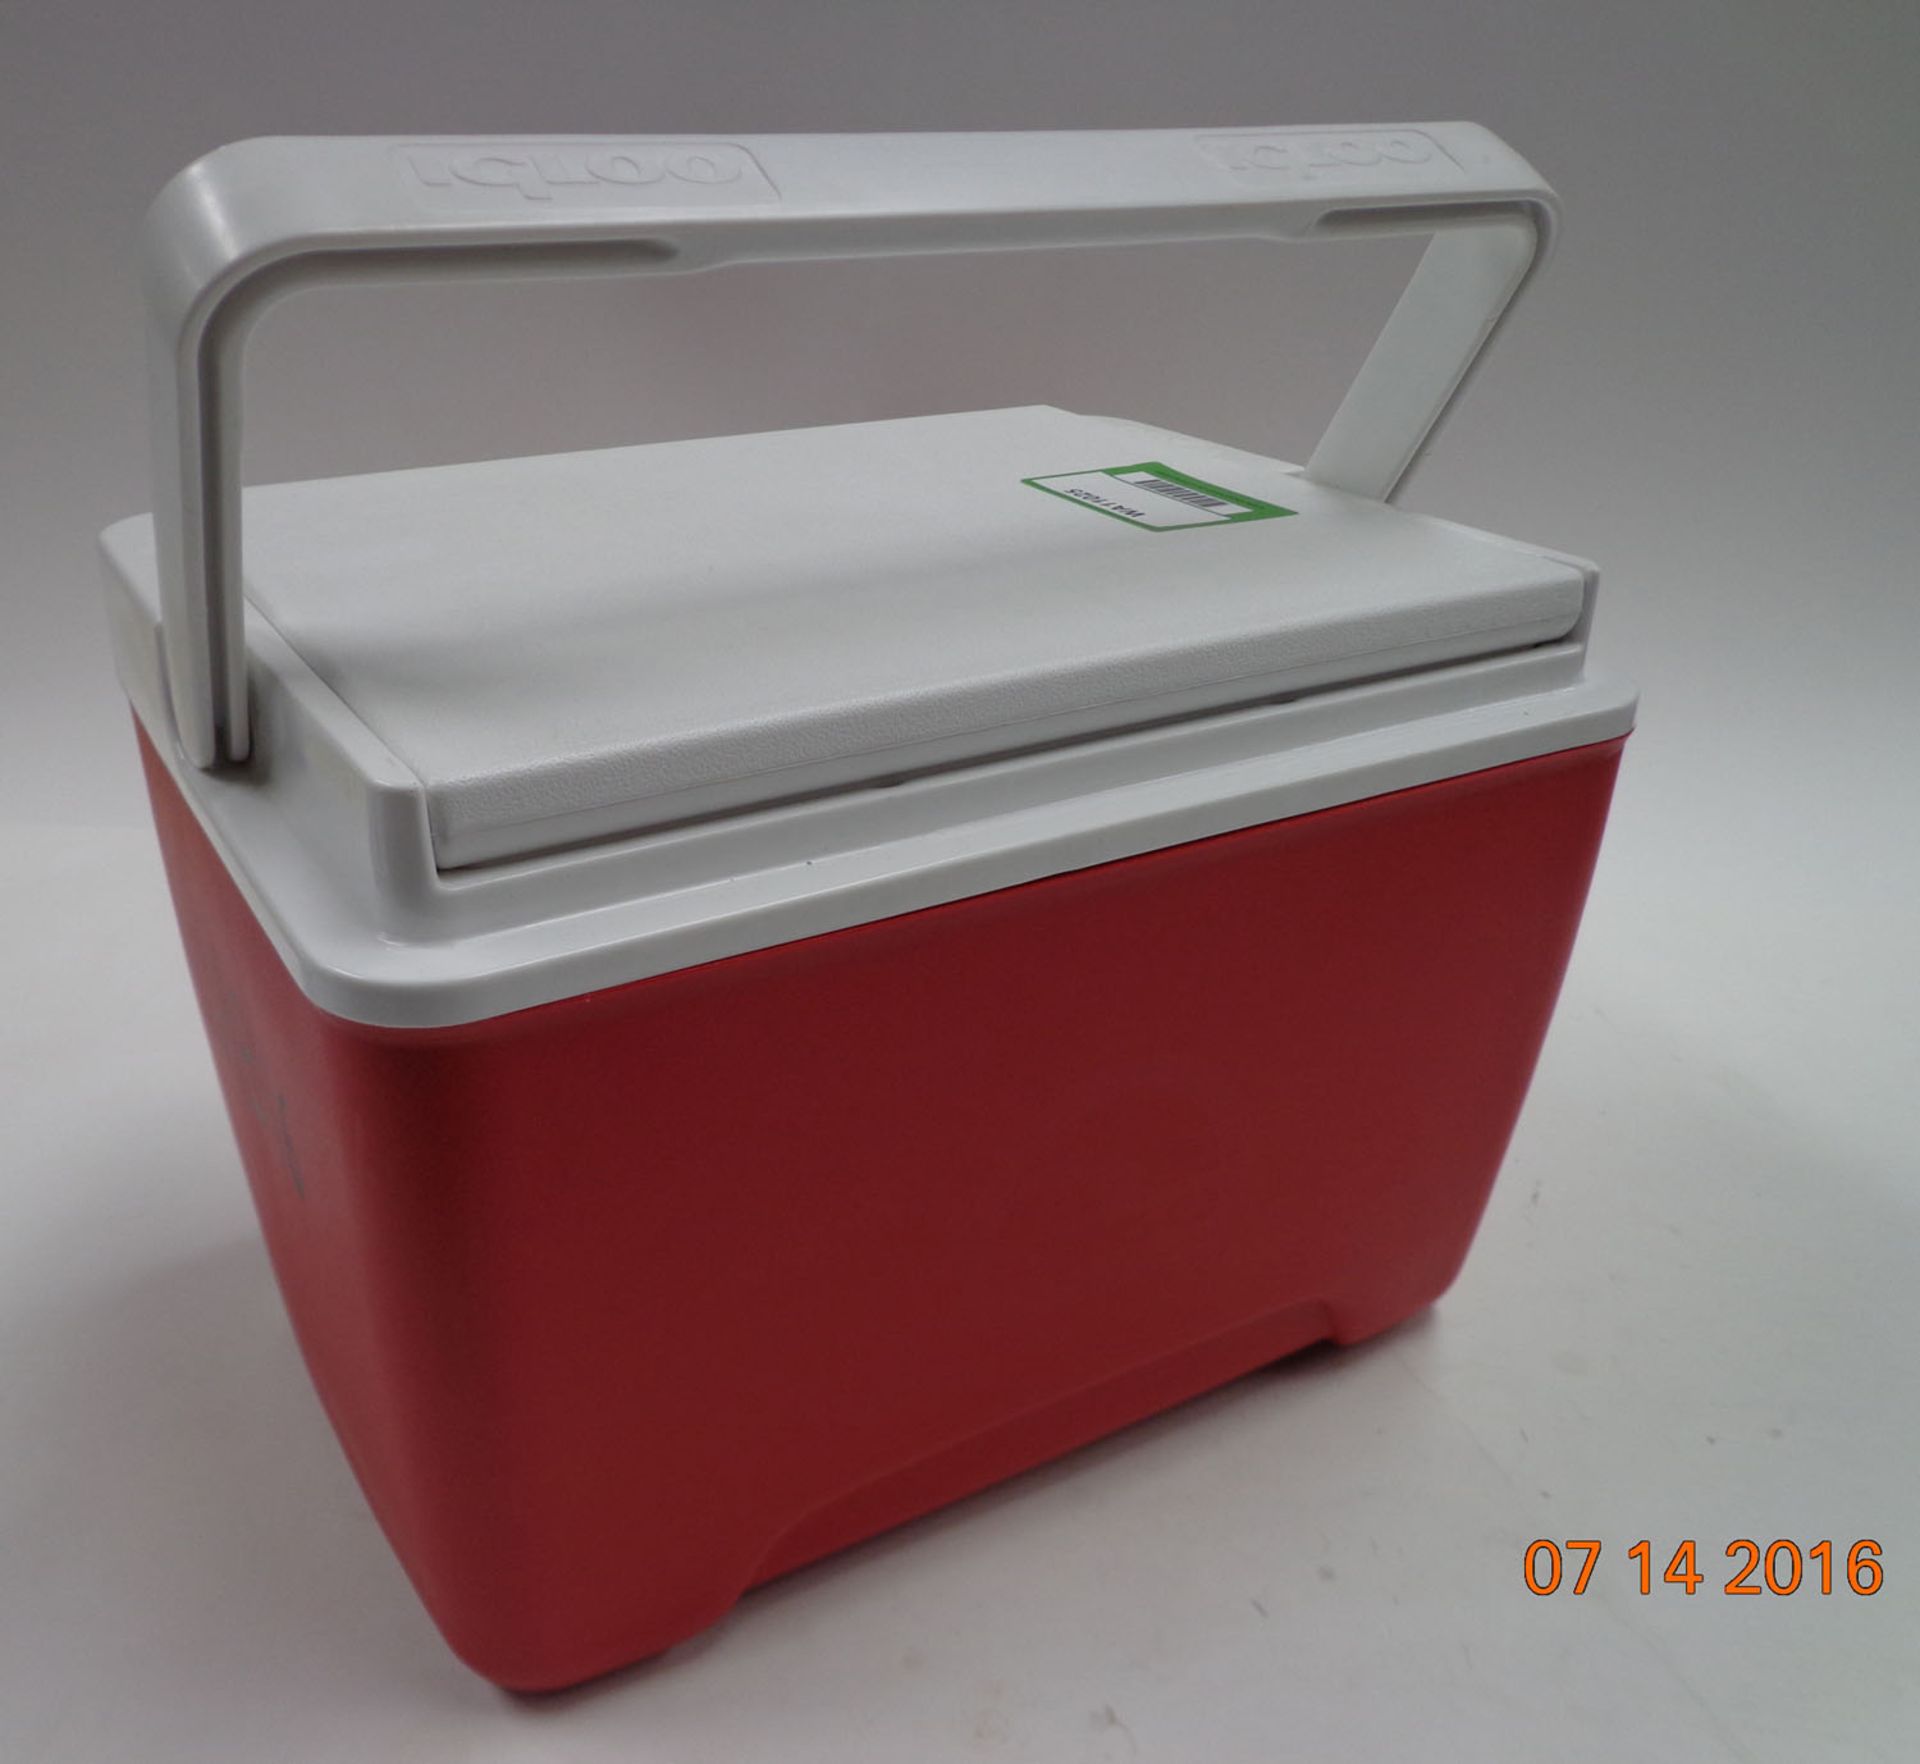 Igloo cool box (Ref: WA11025) - Image 2 of 2